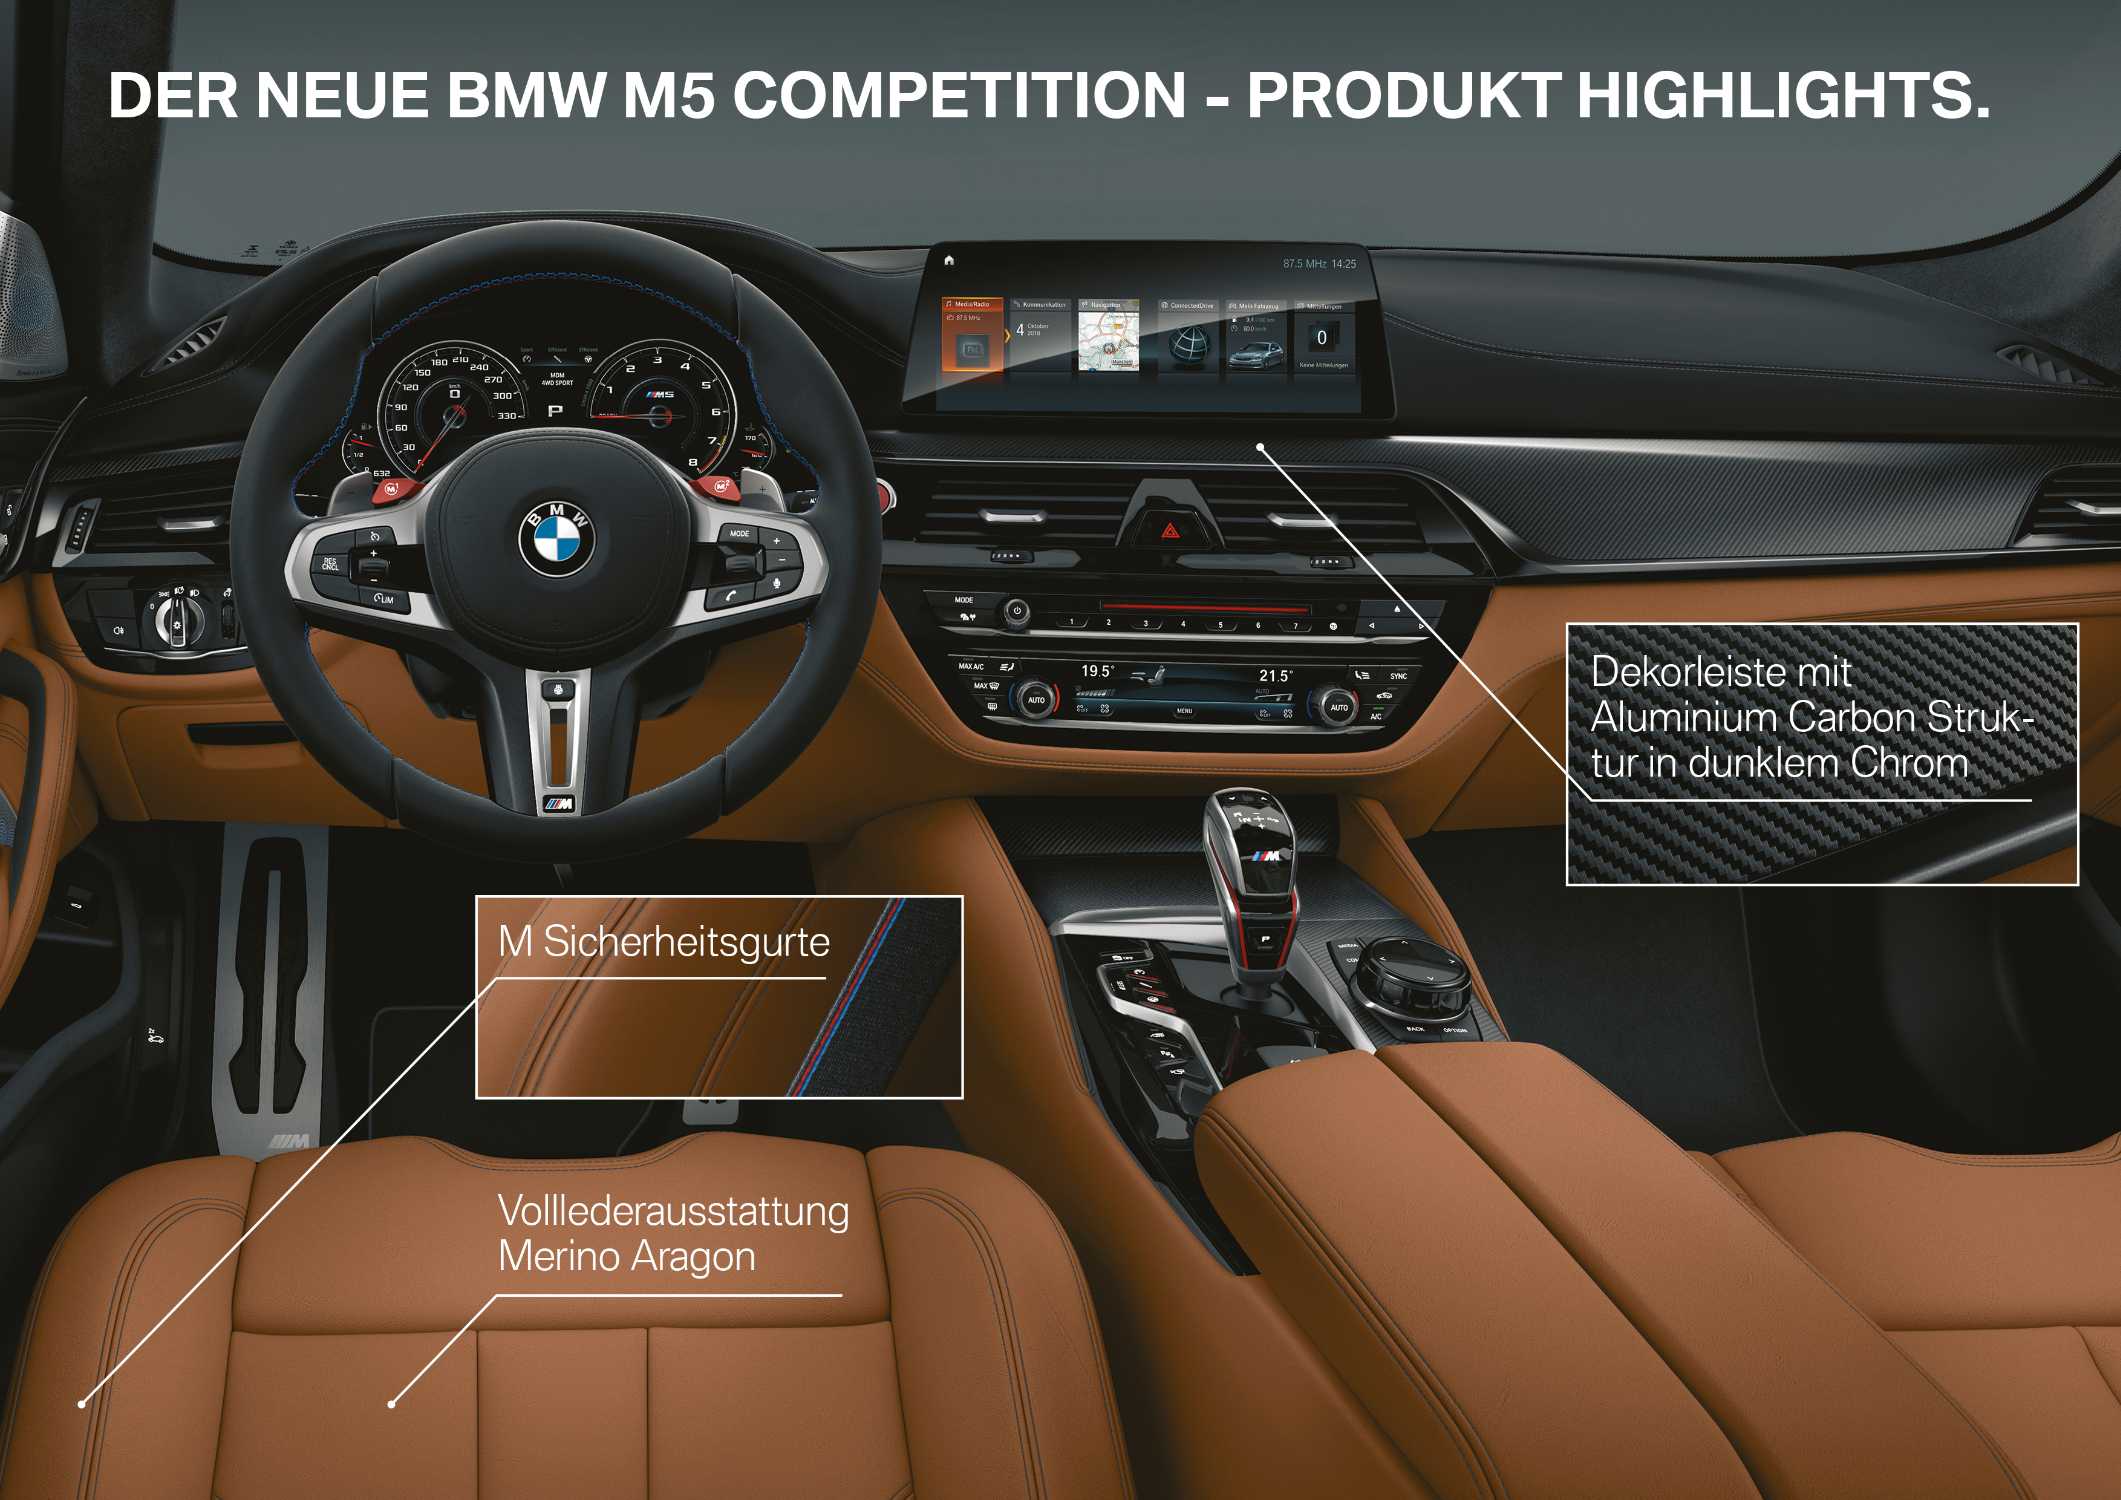 Der neue BMW M5 Competition (05/2018).